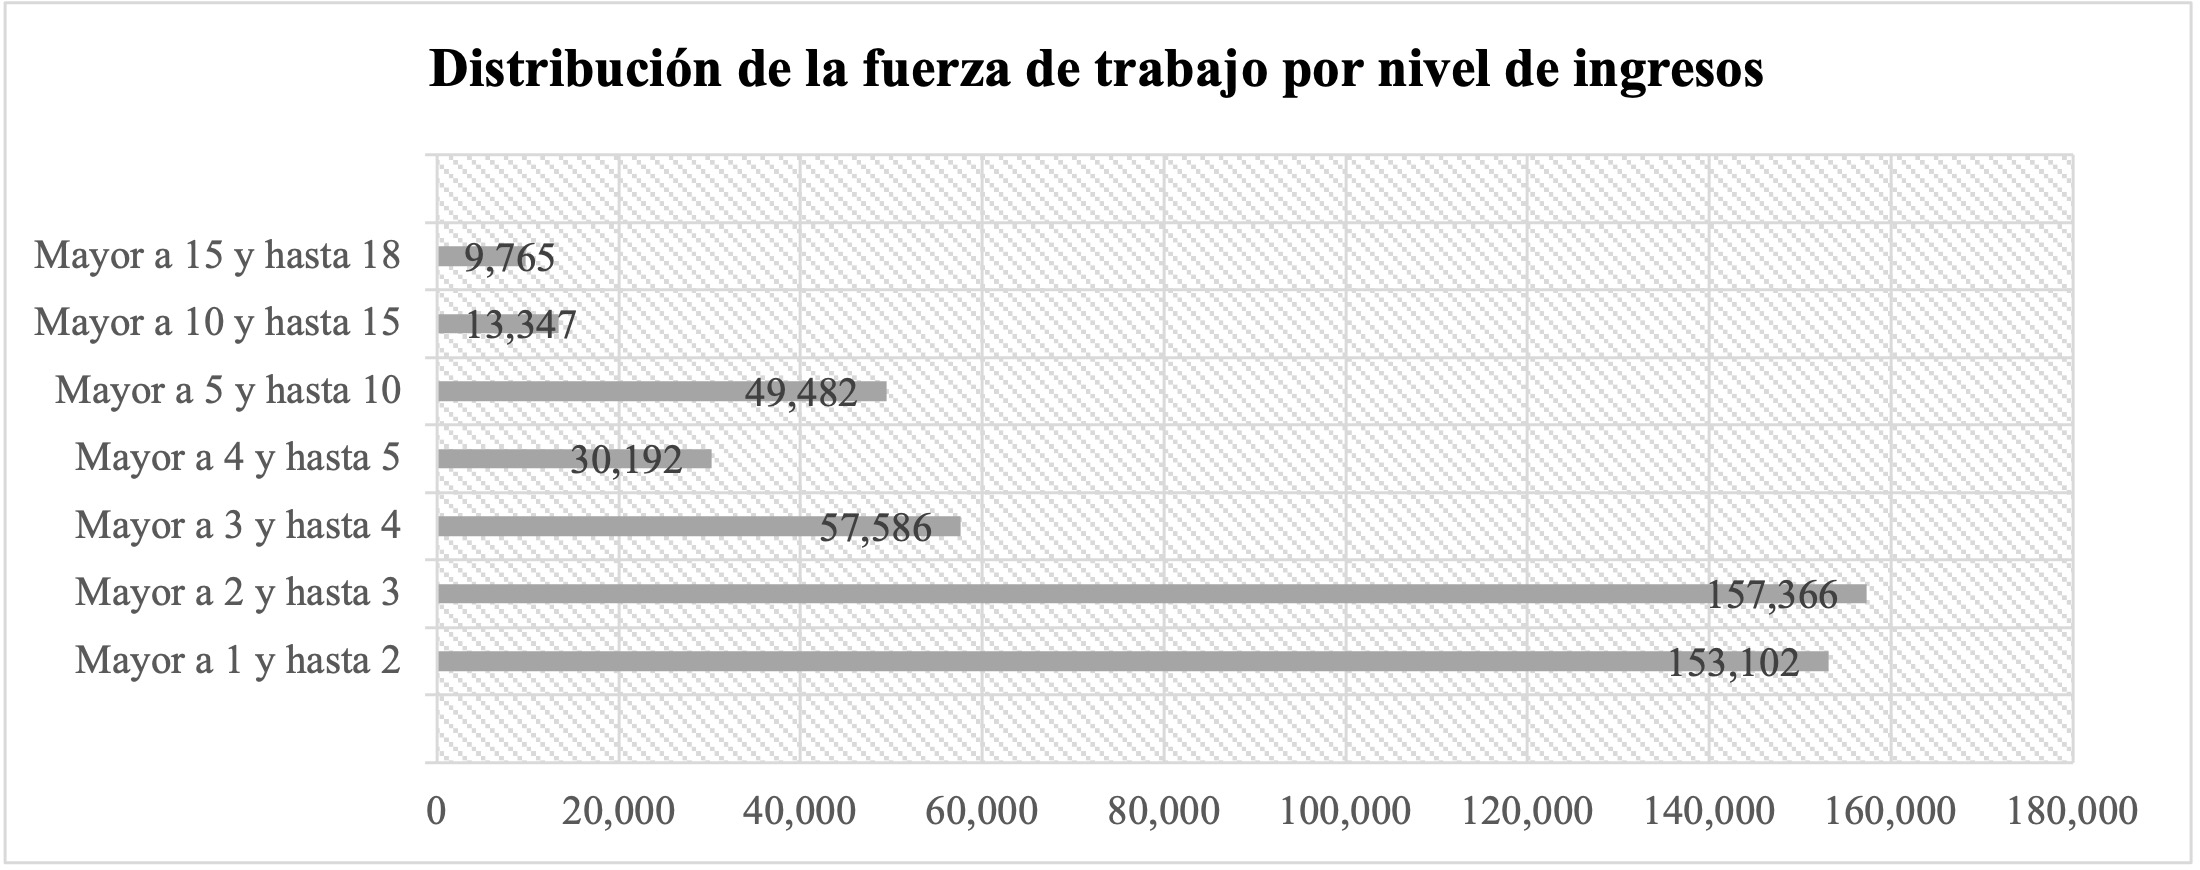 Distribución de la fuerza de trabajo (número de personas) por nivel de ingresos
(salarios mínimos vigentes)